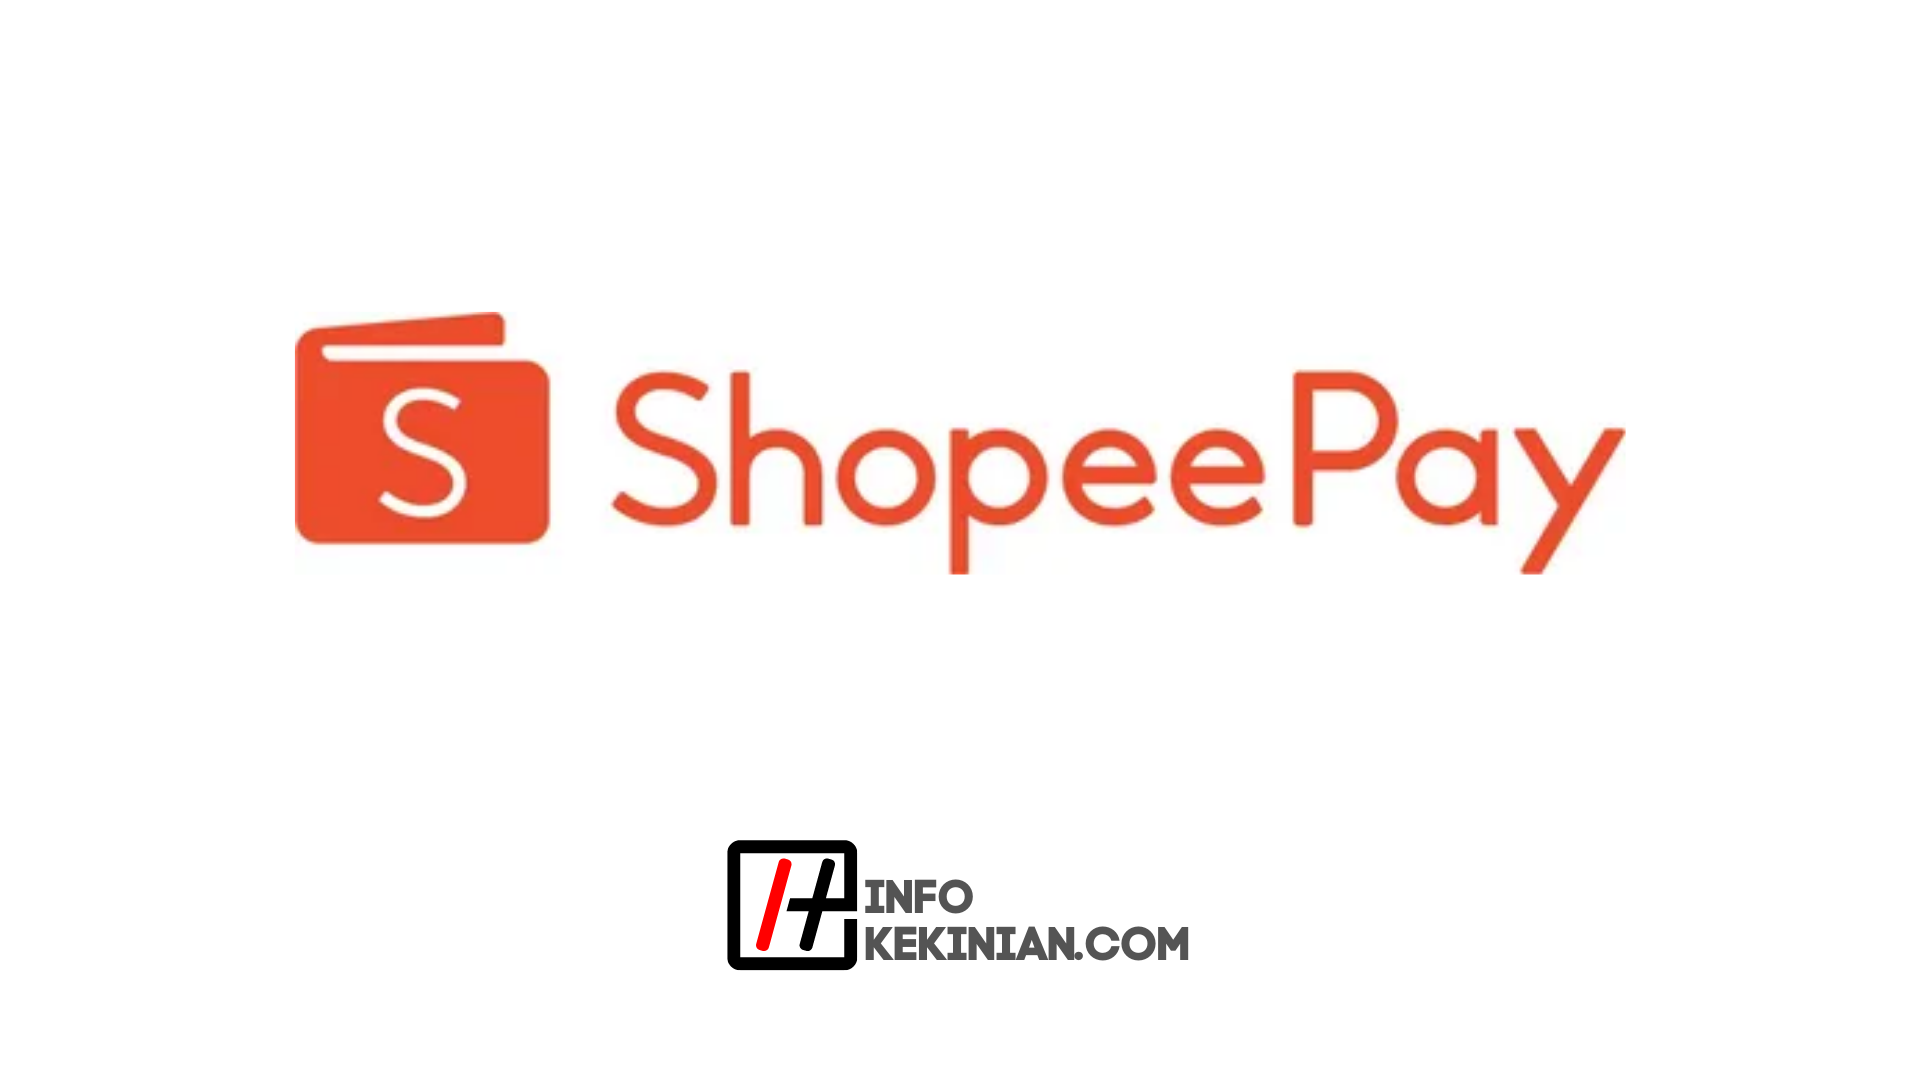 Praktyczny i nieskomplikowany sposób doładowania ShopeePay